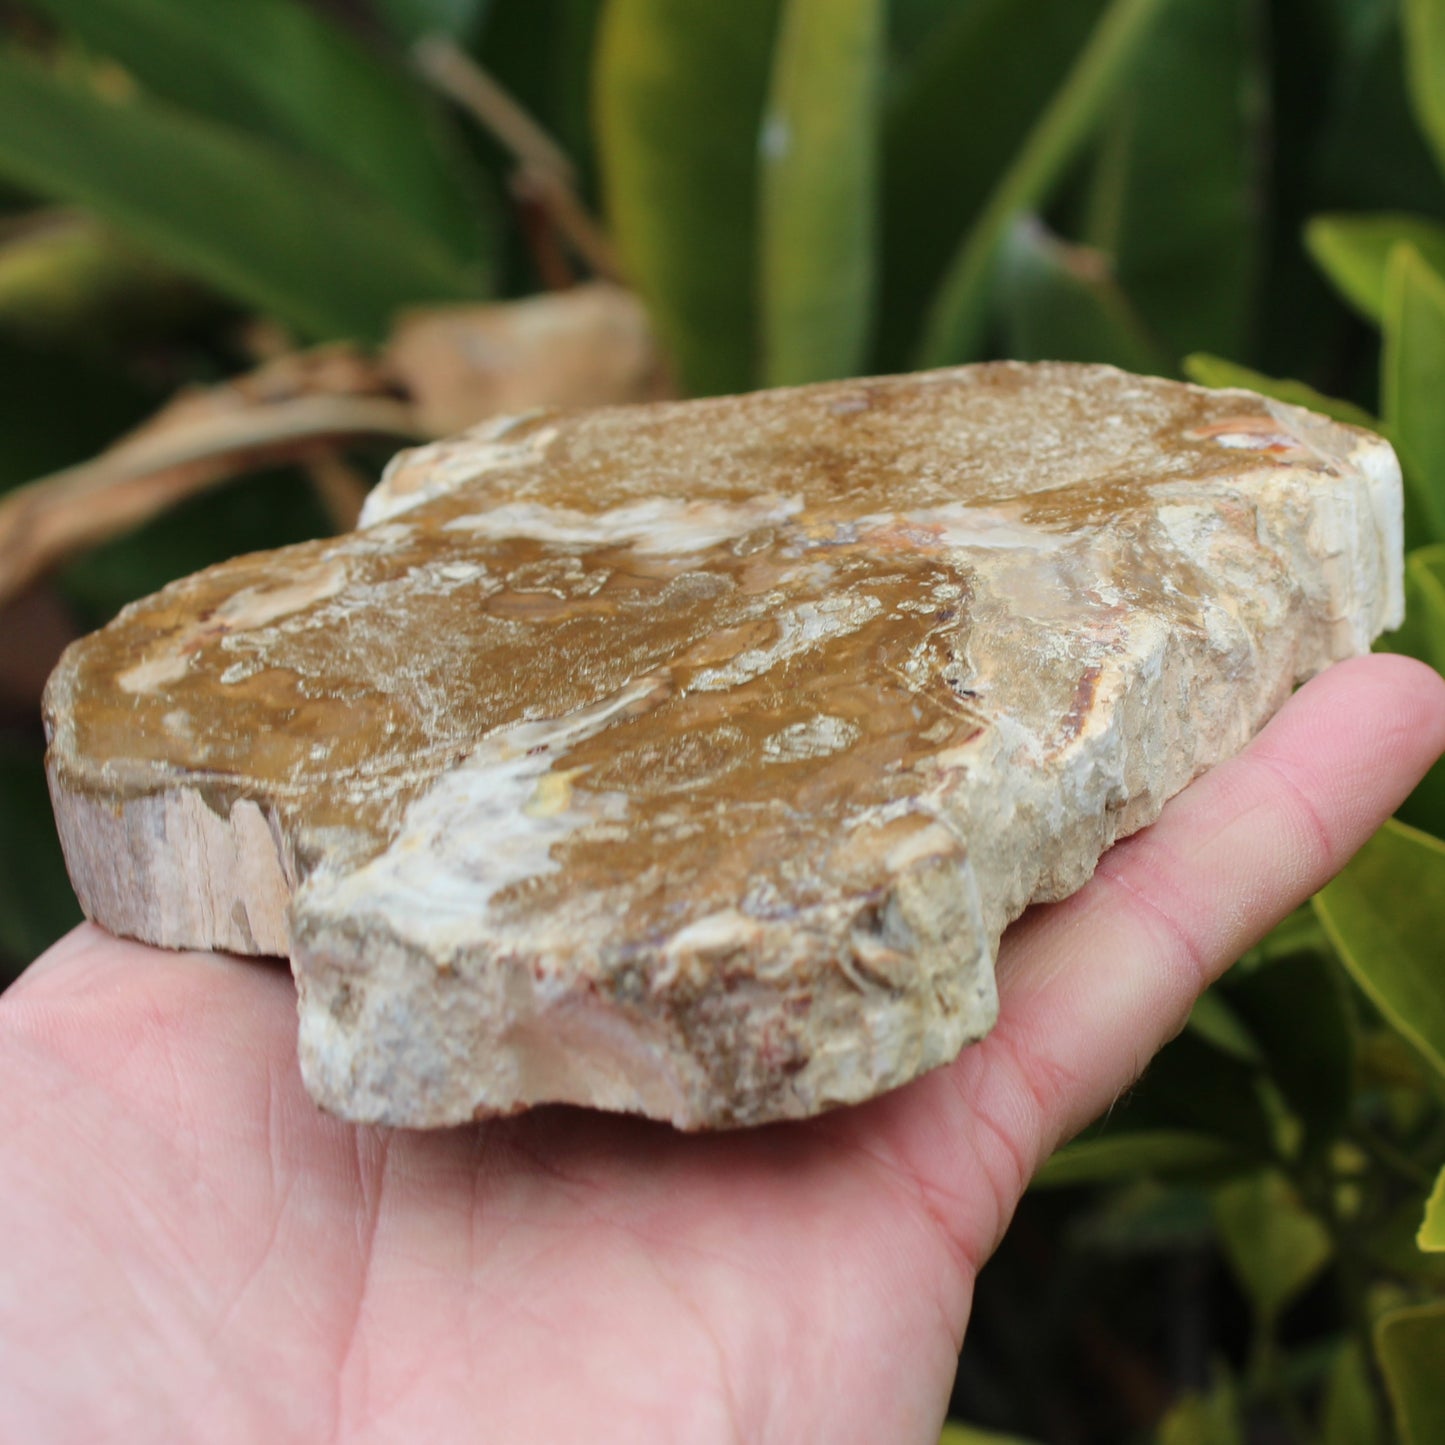 Petrified Wood slice from Madagascar 464g